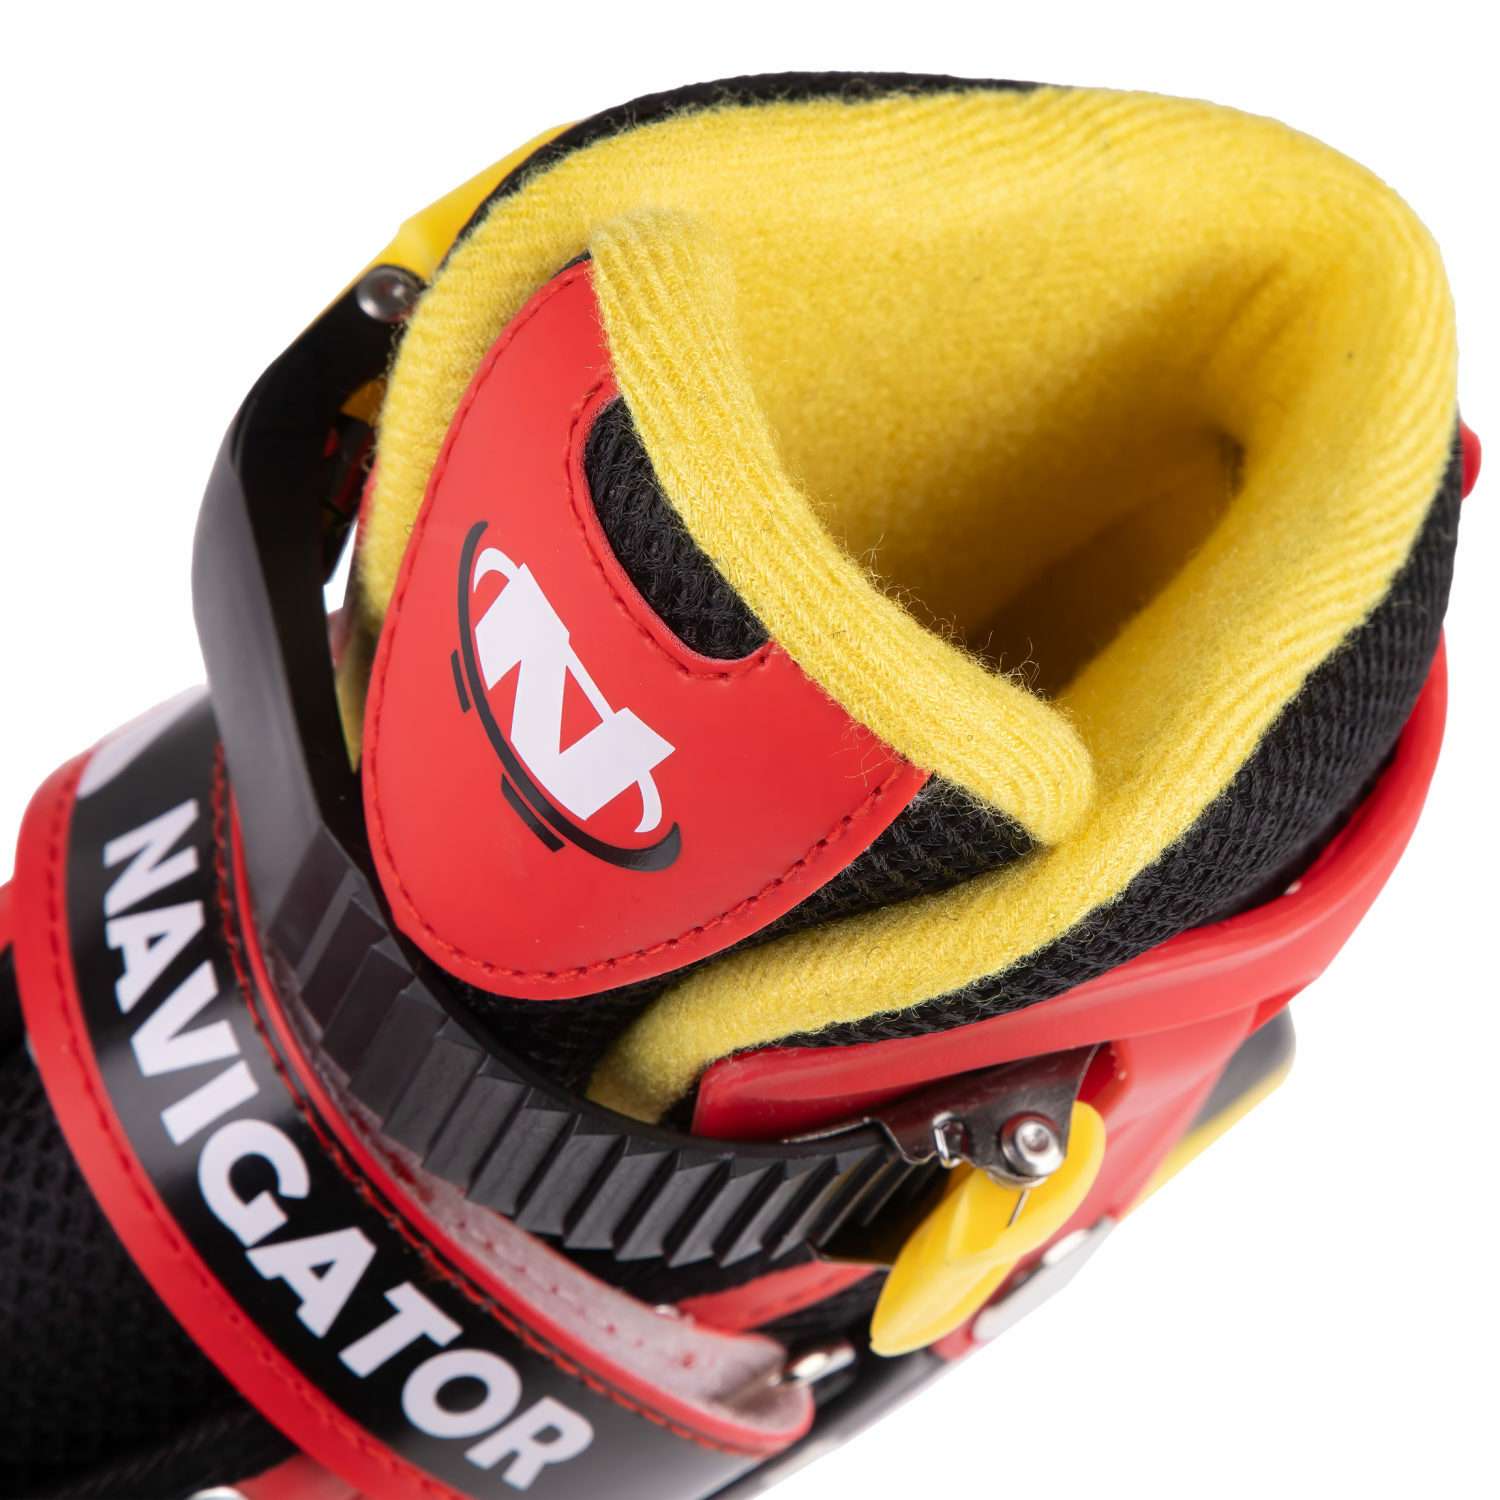 Ролики Navigator детские раздвижные 34 - 37 размер с защитой и шлемом красный - фото 7